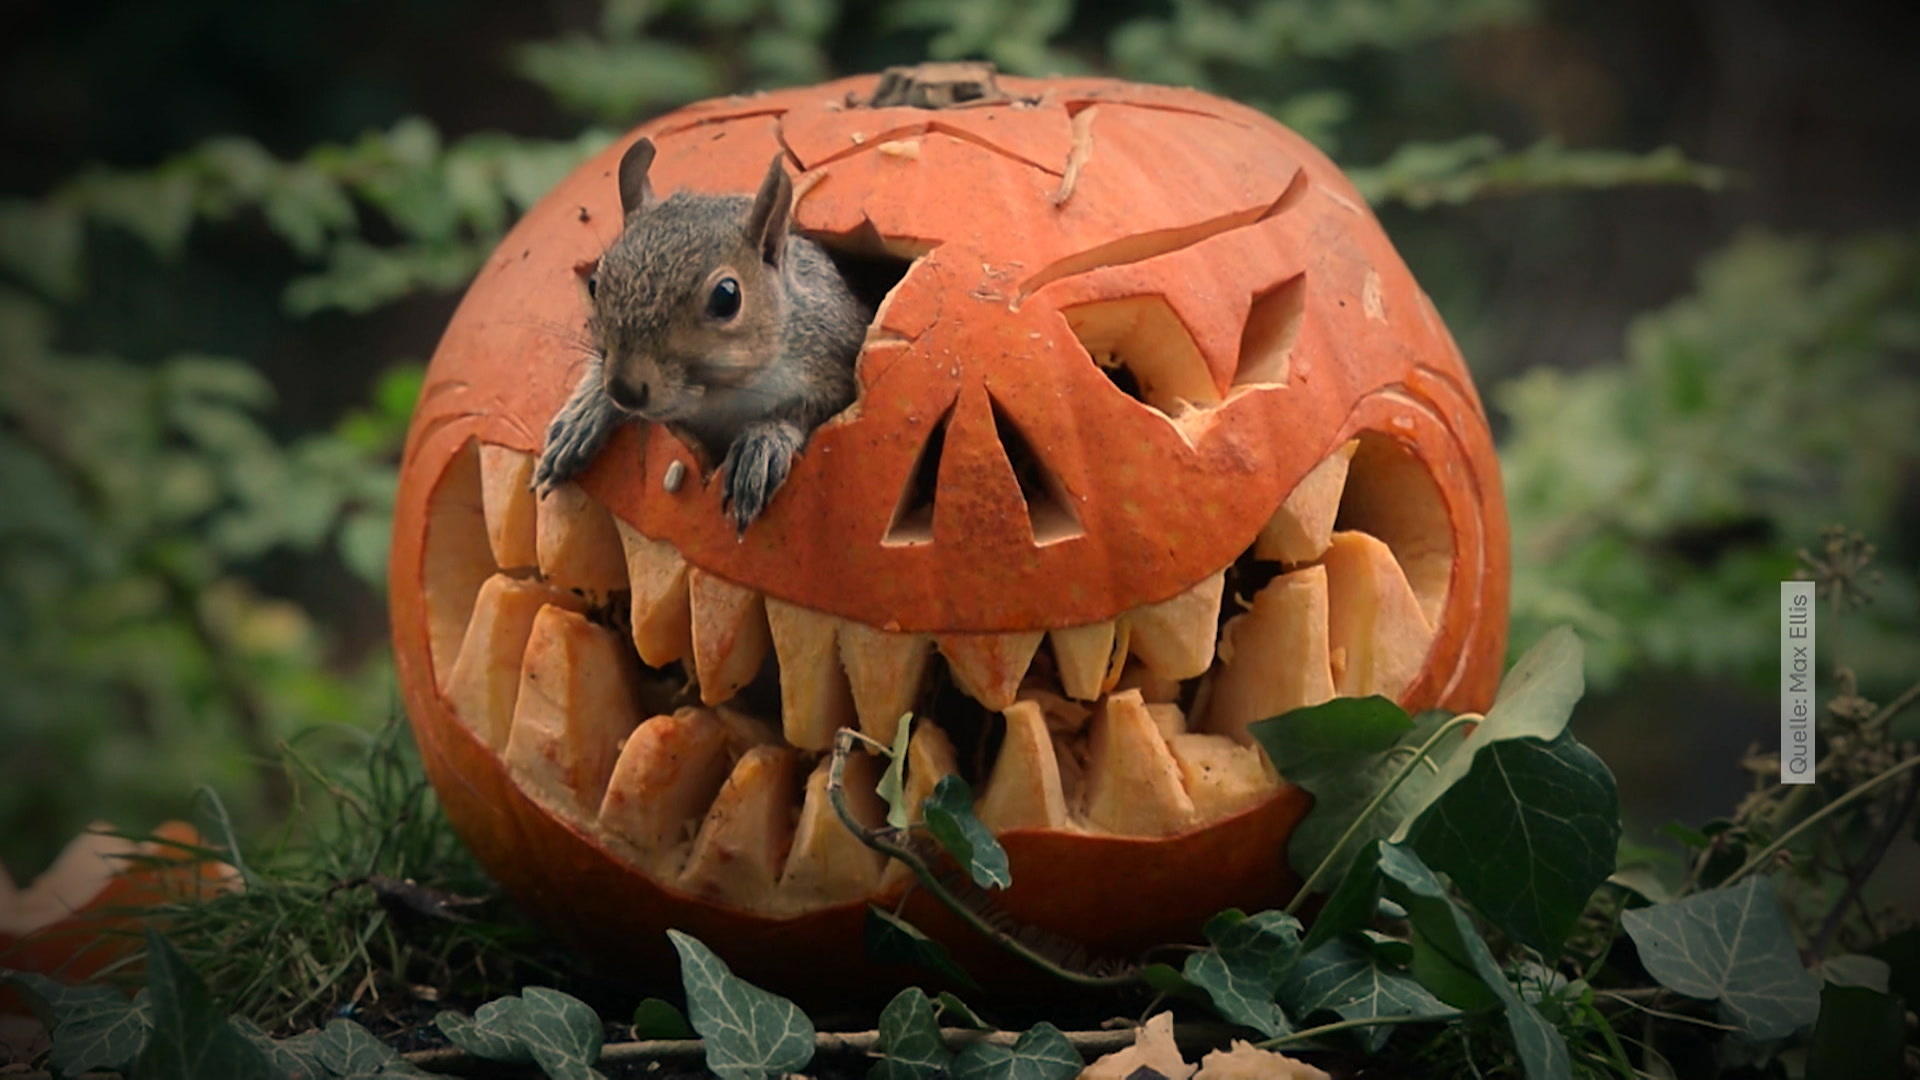 Happy Halloween! Eichhörnchen spielt mit Kürbissen! Weniger gruselig, dafür um so süßer